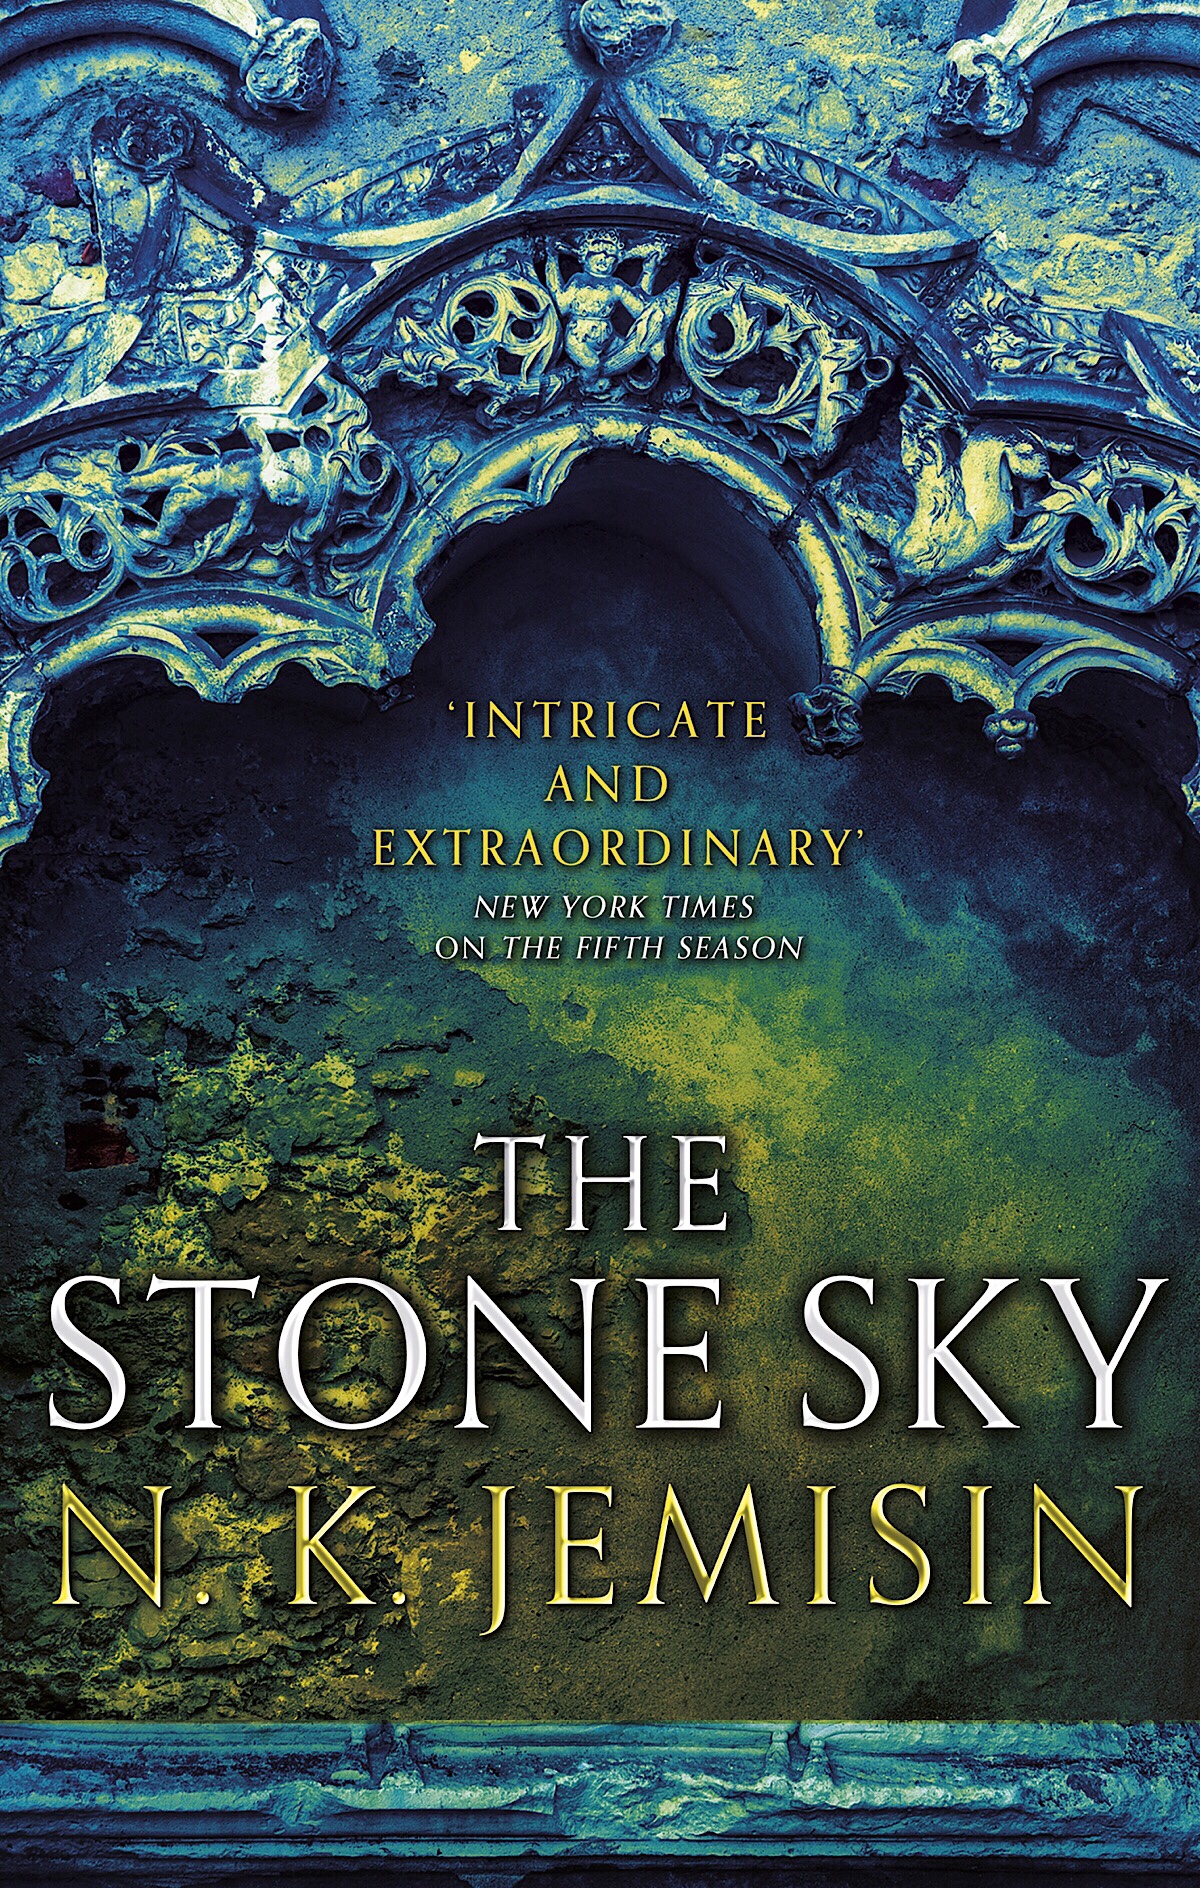 The Stone Sky, by N.K. Jemisin